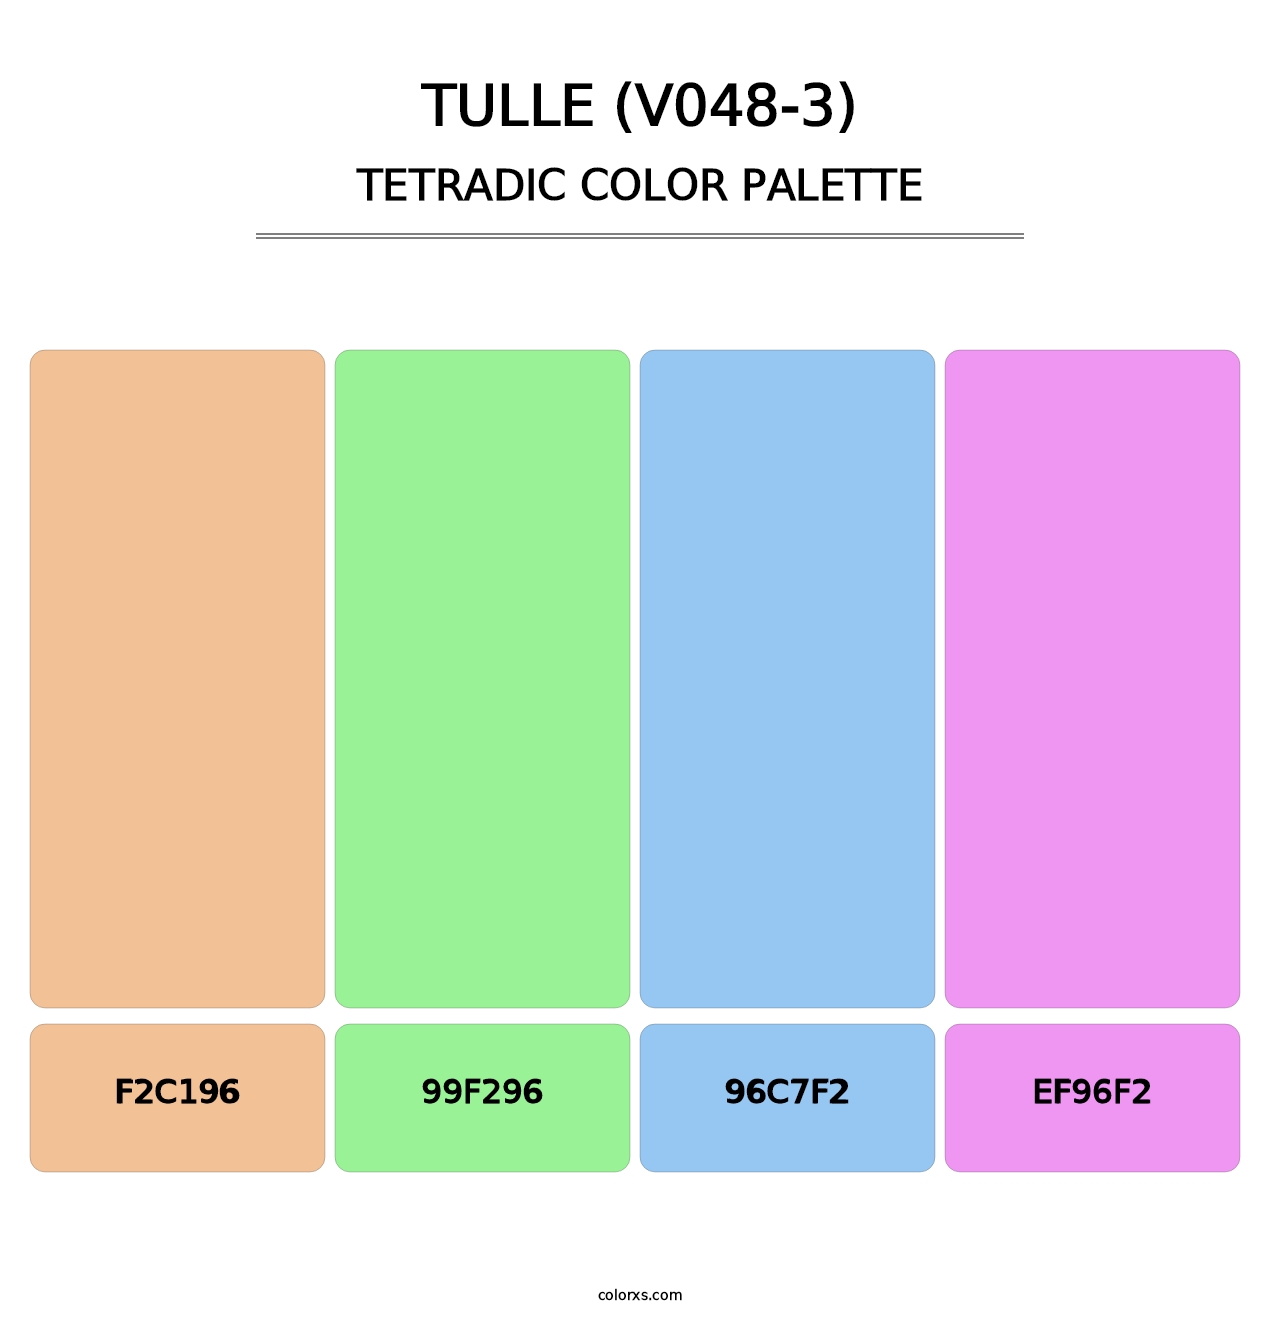 Tulle (V048-3) - Tetradic Color Palette